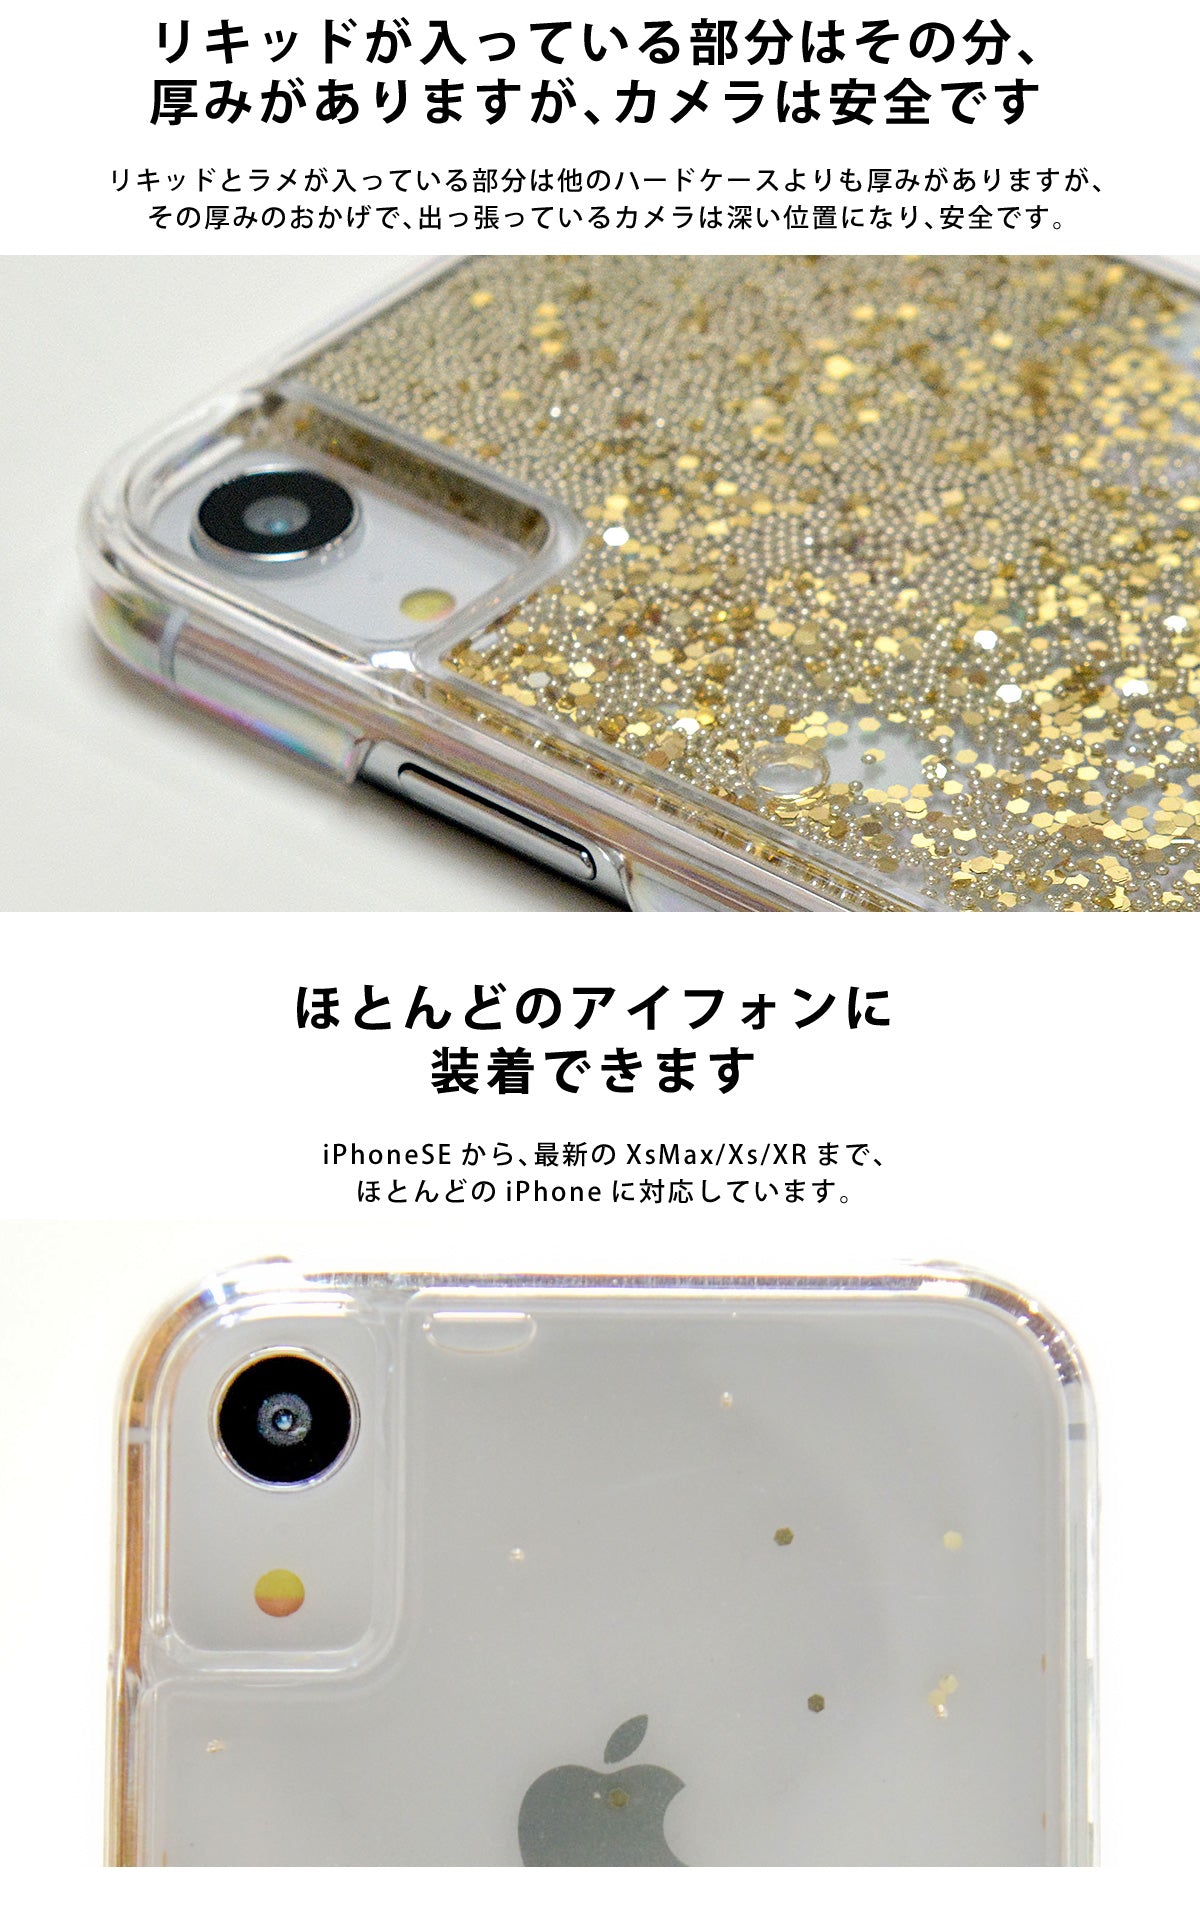 キラキラと輝くラメが美しいグリッターケースは、ほとんどのiPhoneに対応しています。